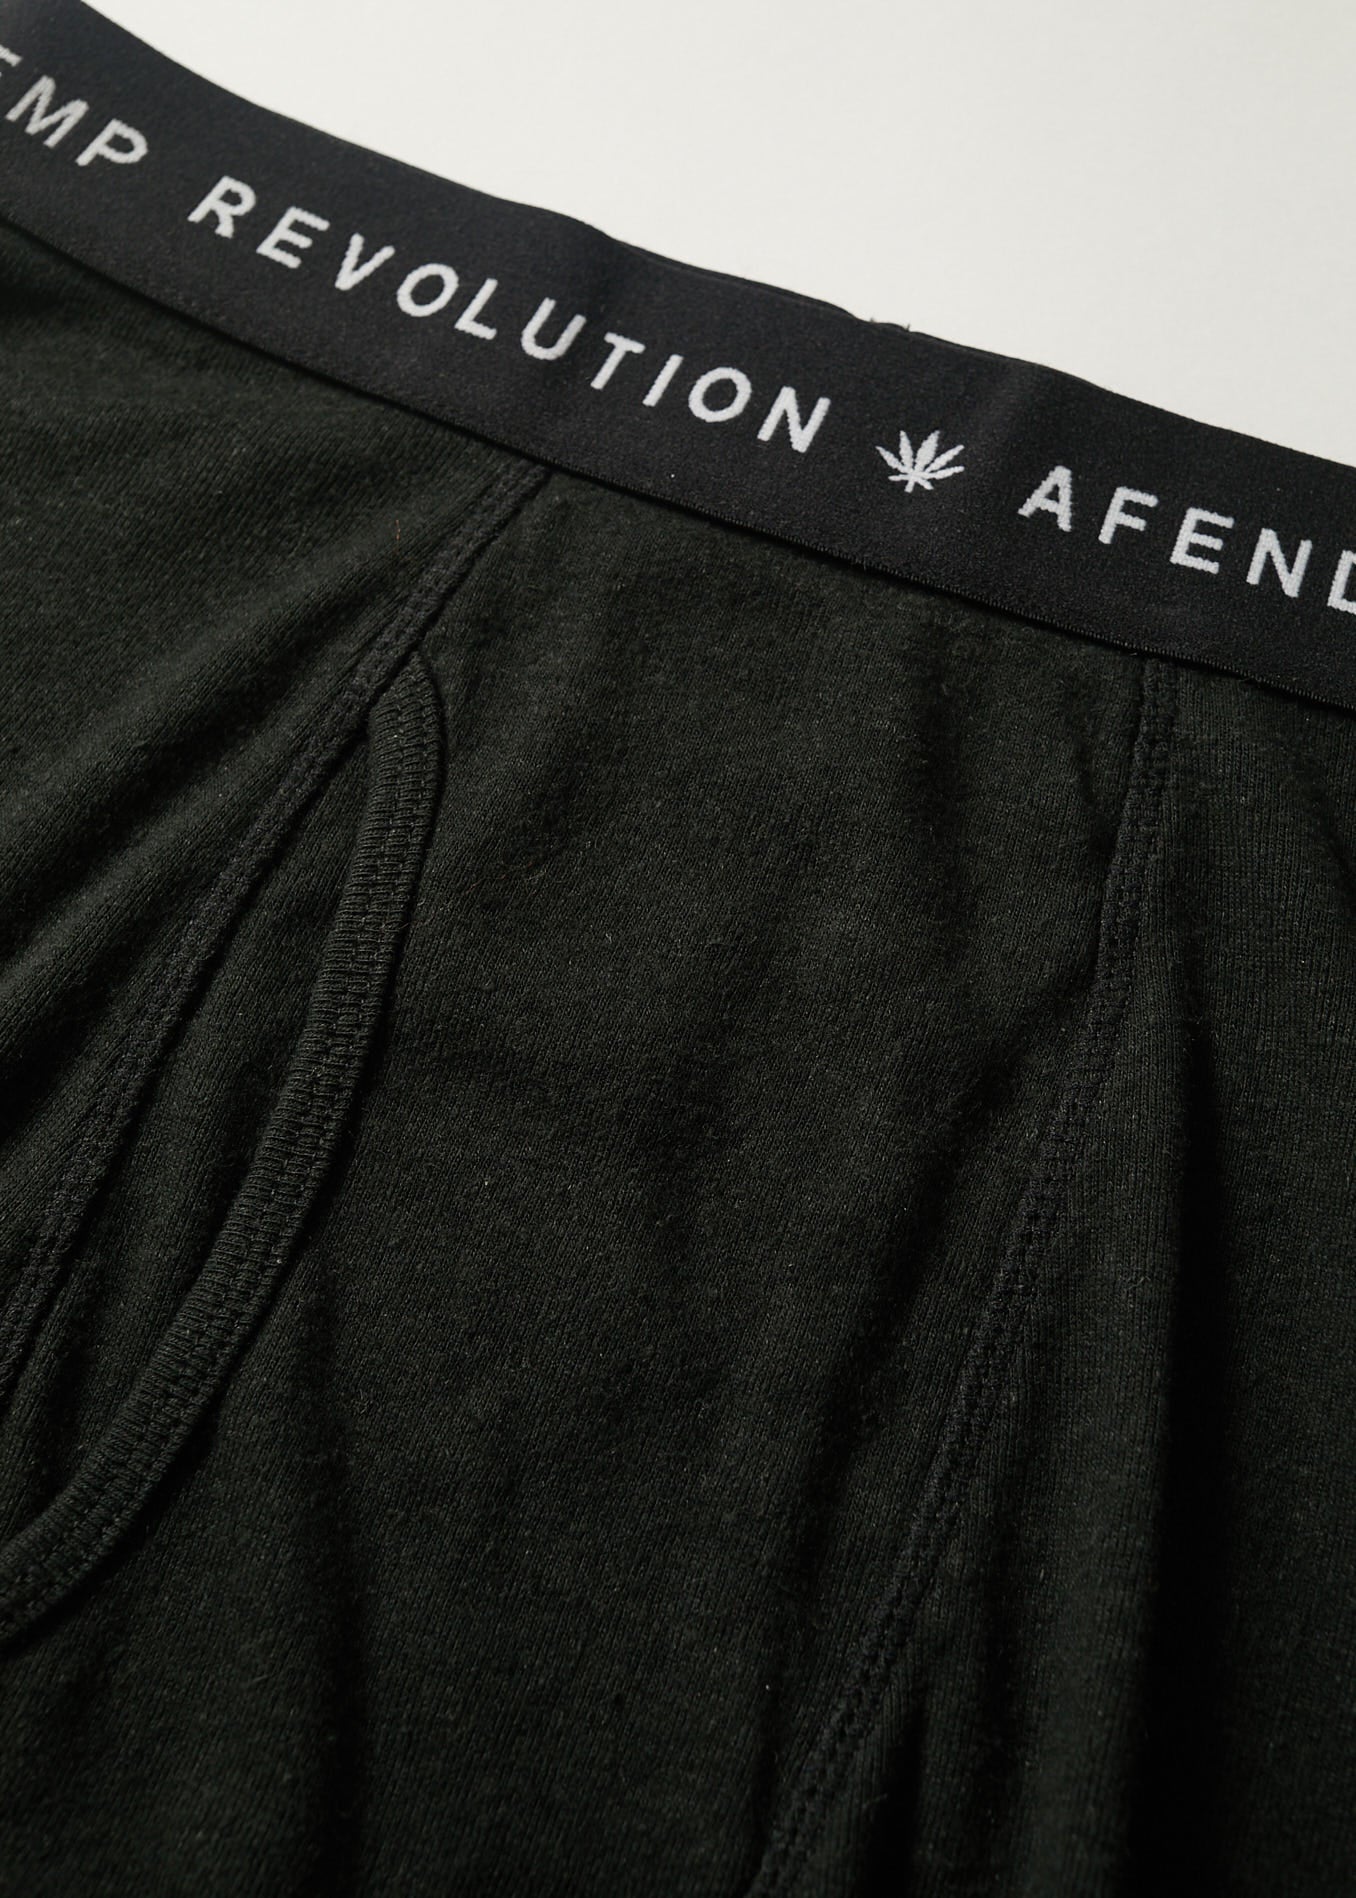 Hemp & Cotton Blend Mens Boxer Briefs Moisture Wicking Performance  Underwear